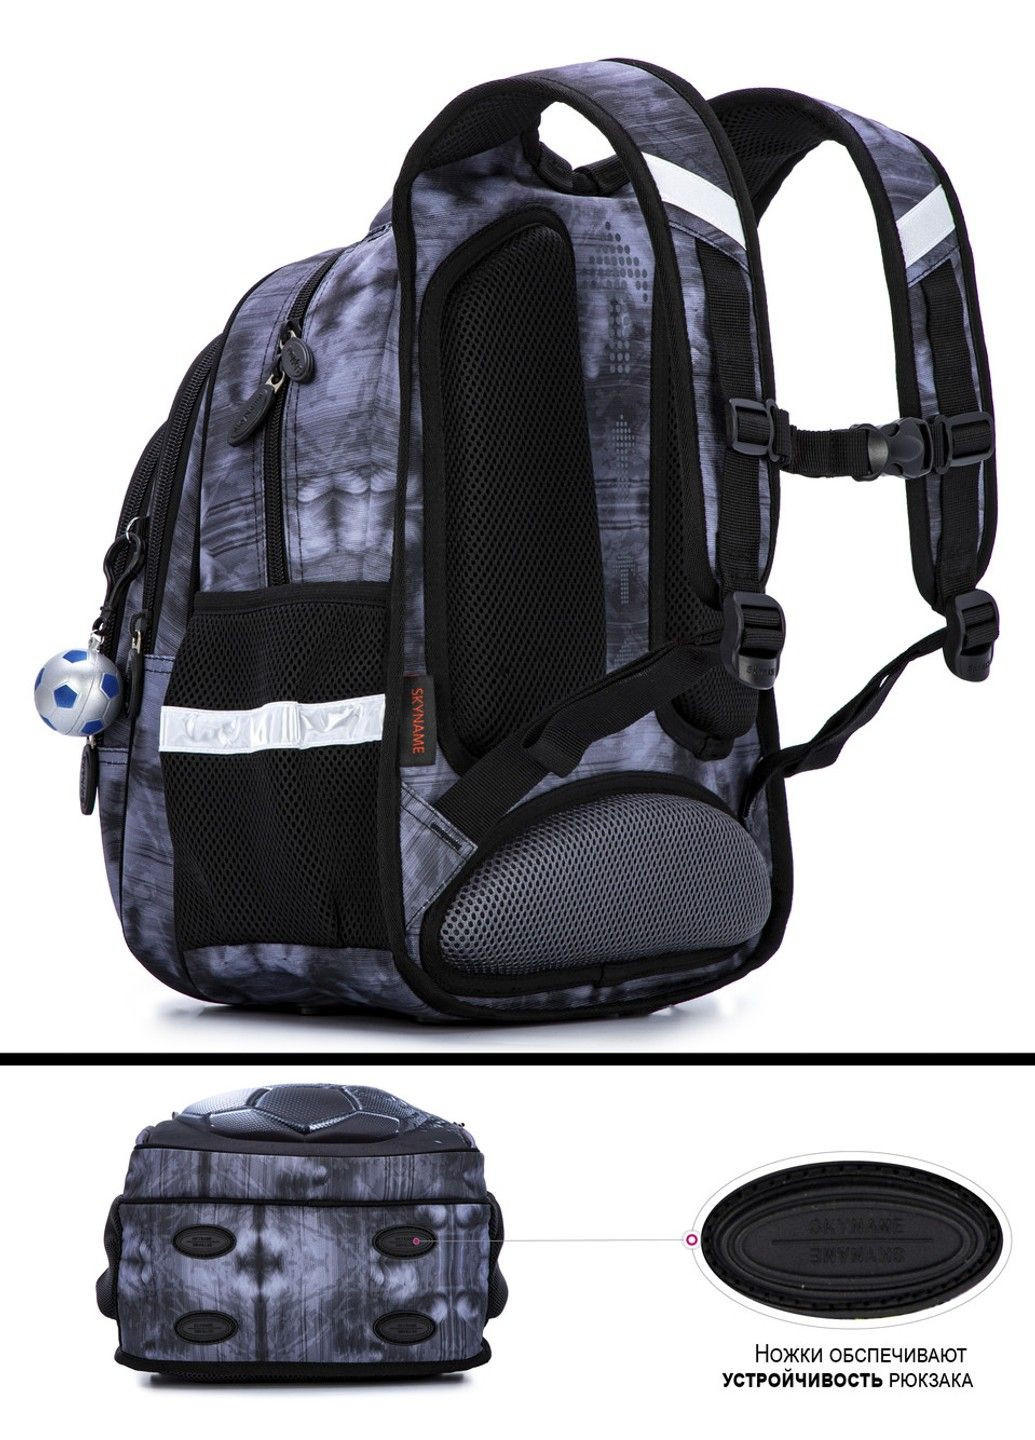 Шкільний рюкзак для хлопчиків SkyName R2-193 Winner One (278404536)